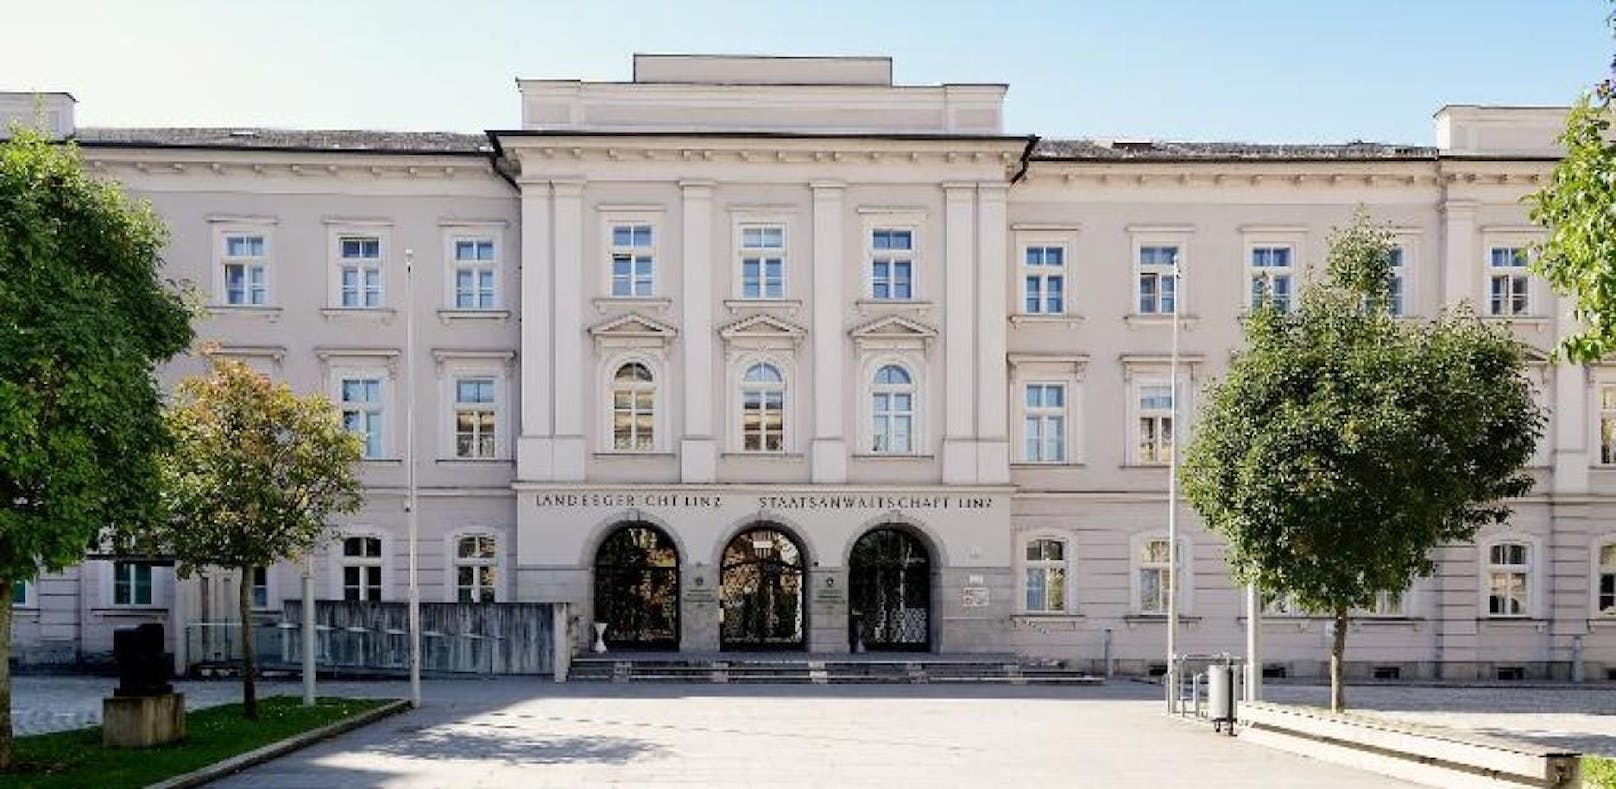 Die beiden Männer wurden am Landesgericht in Linz verurteilt, im Gebäude allerdings waren sie nicht.